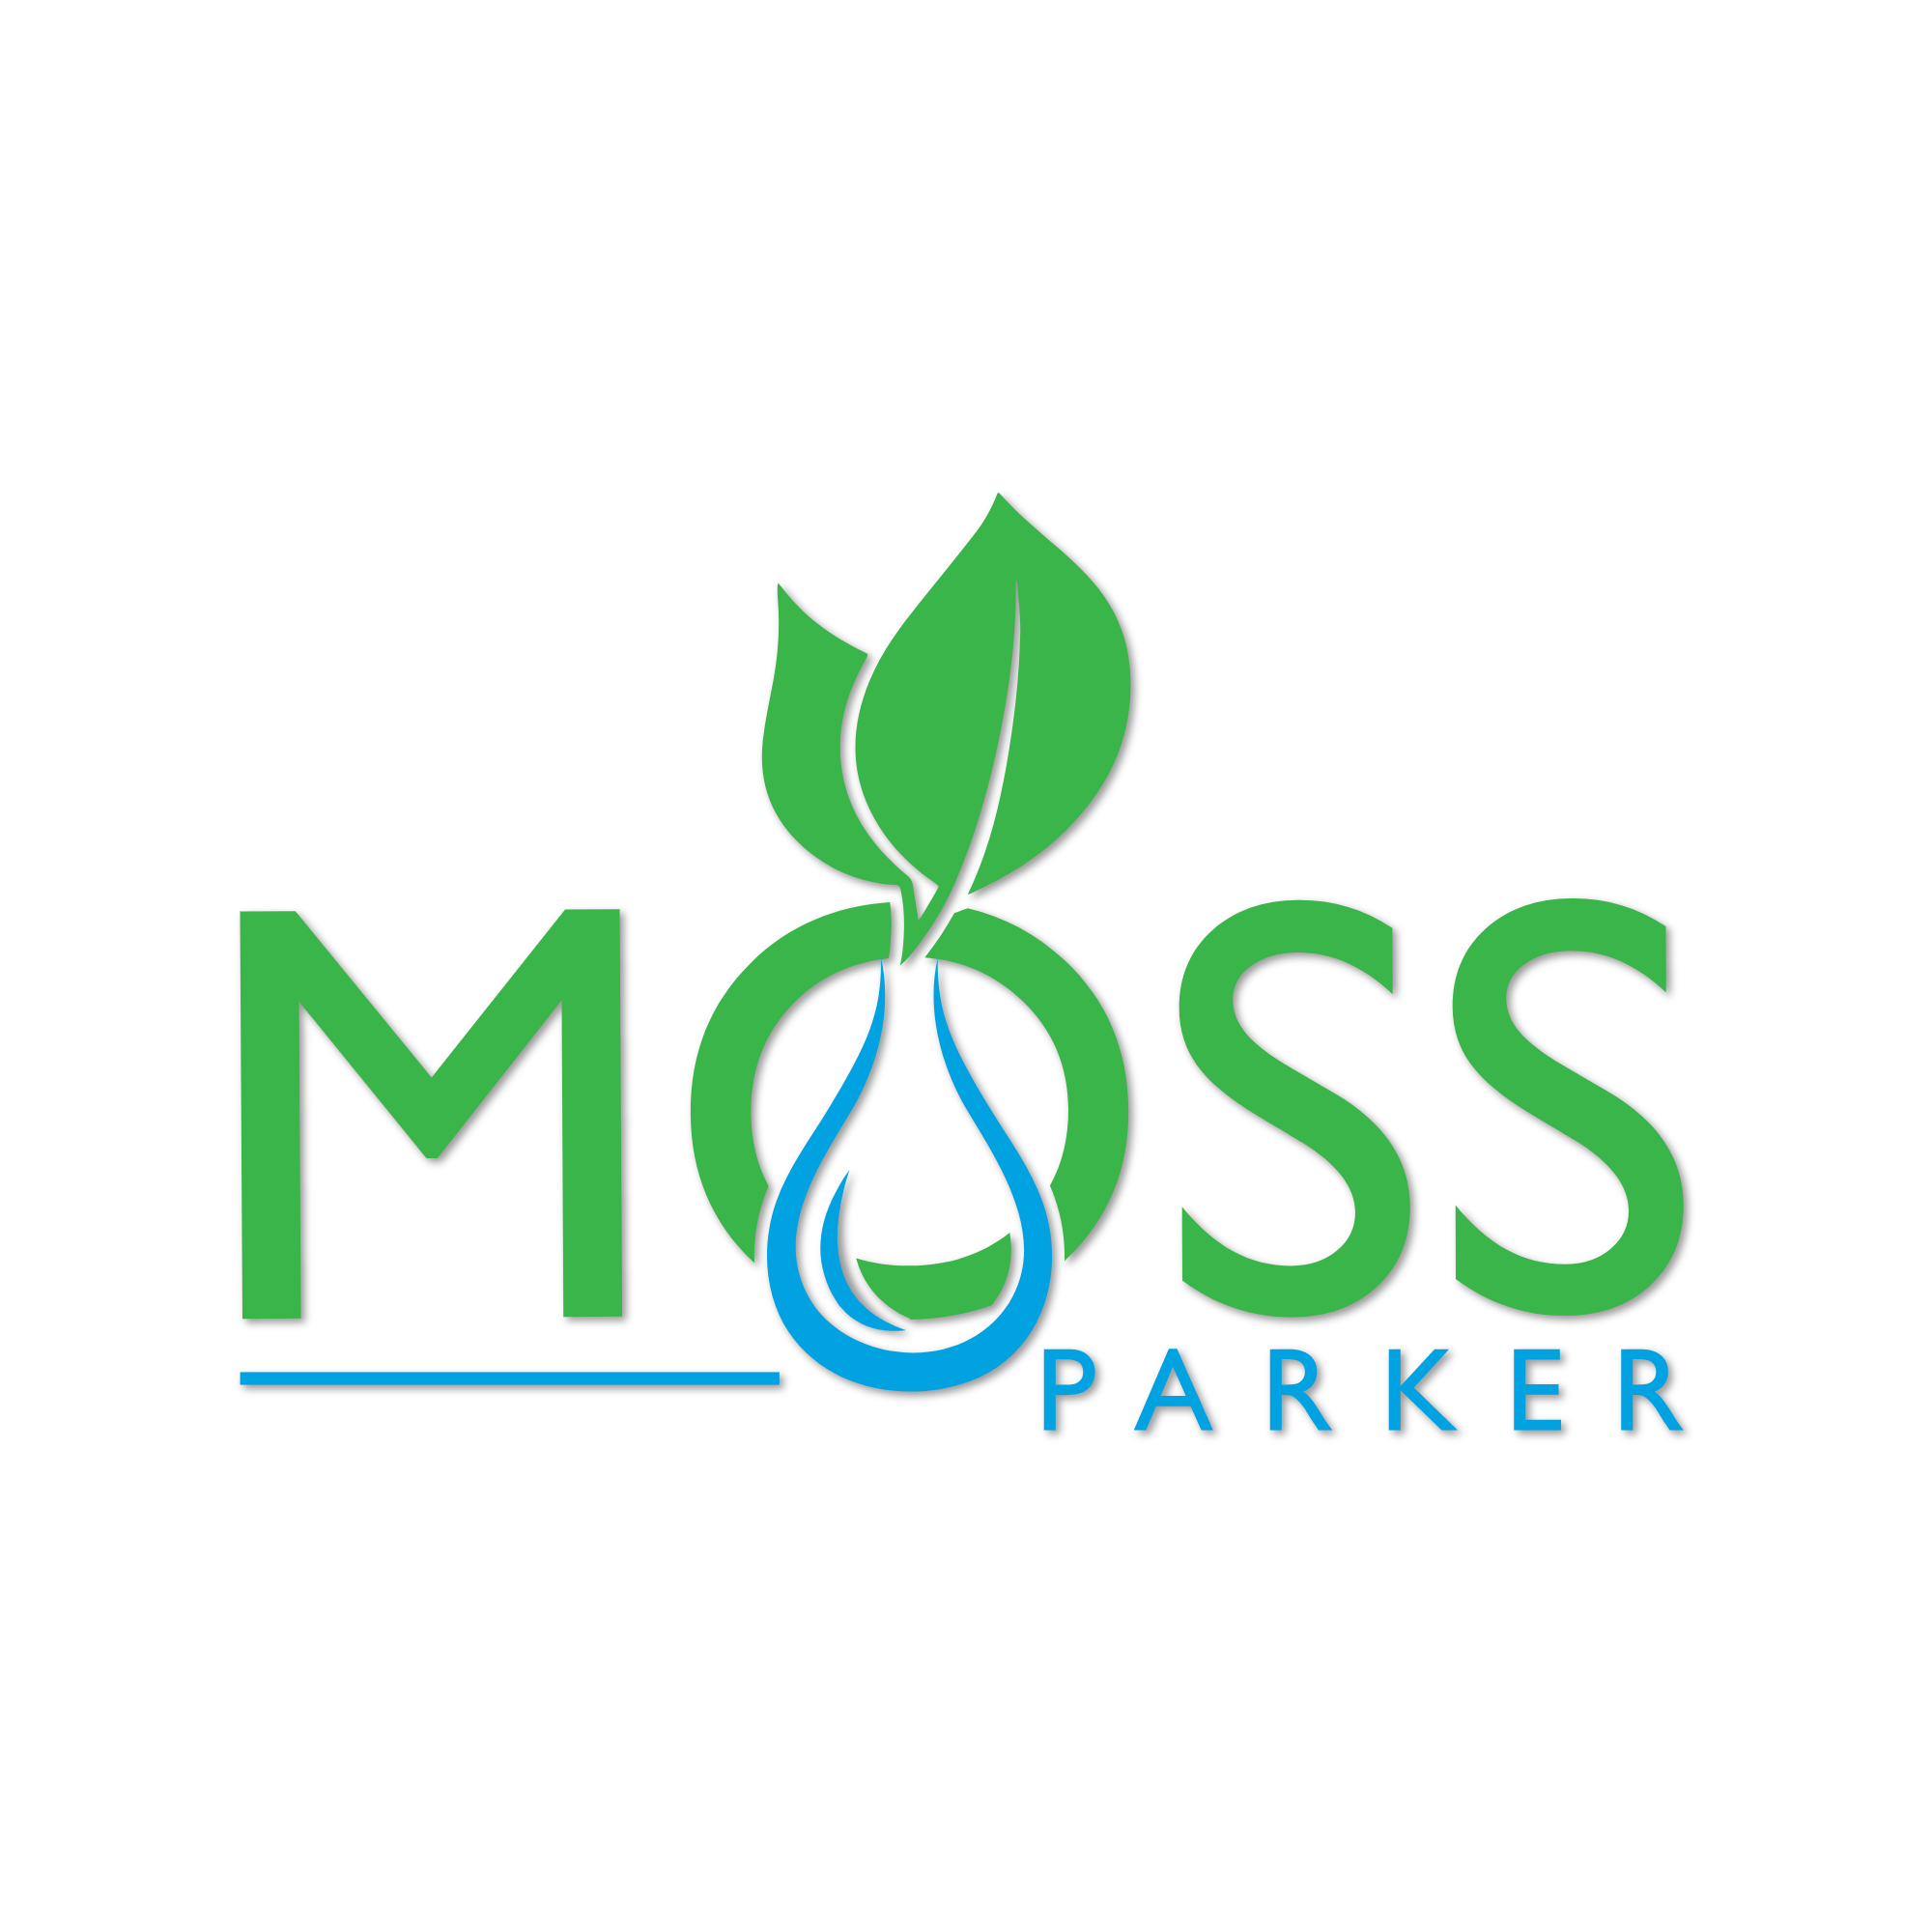 Moss Parker